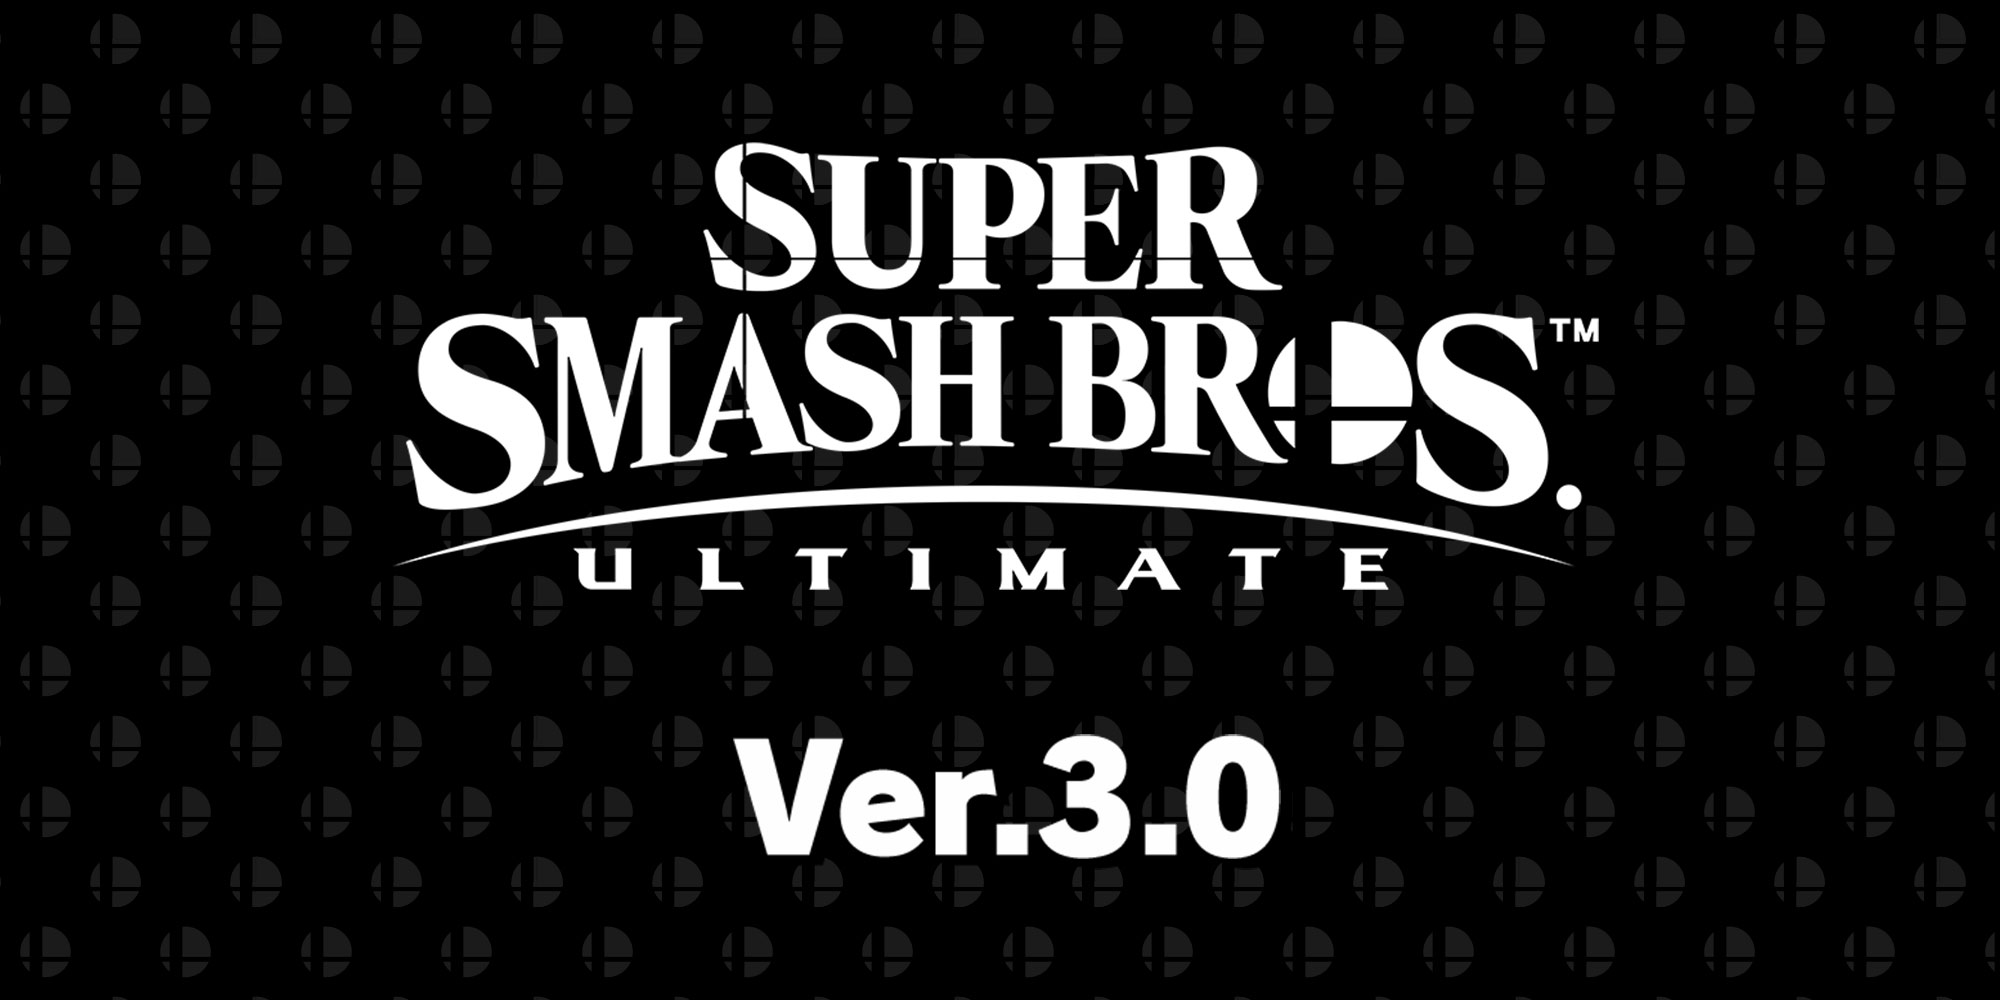 Джокер из Persona 5 появится в Super Smash Bros. Ultimate 18 апреля! топ игры сега онлайн и денди играть бесплатно смотреть все скачать